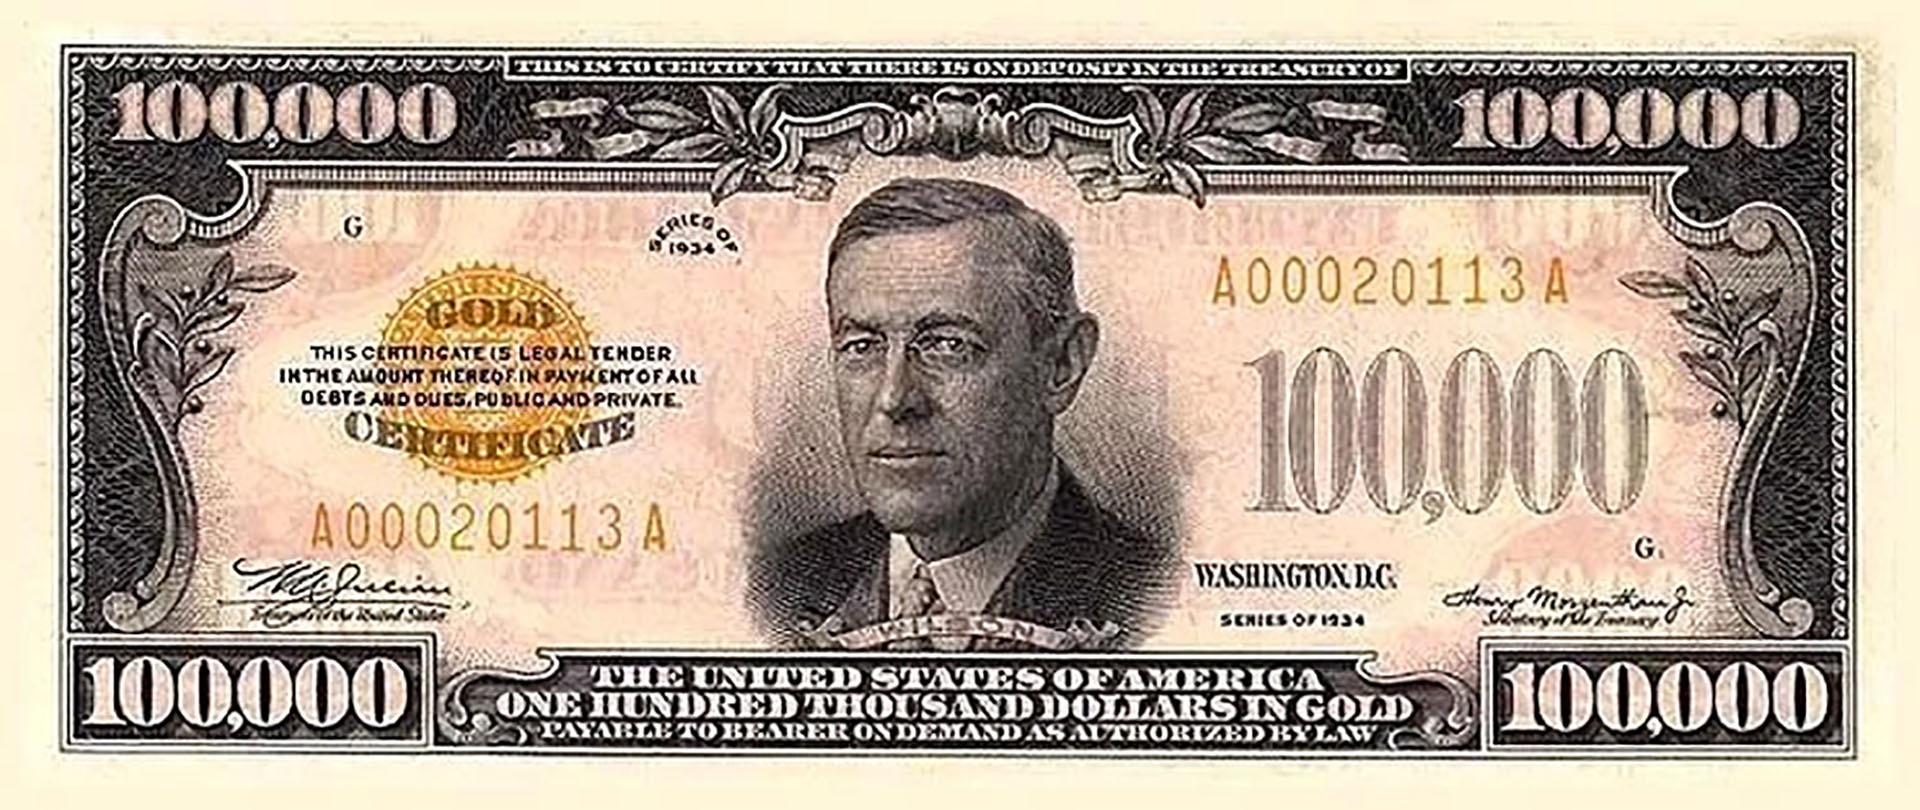 El billete de mayor denominación alguna vez emitido por los EEUU es de USD 100.000. Pero nunca circuló, sólo se utilizó para transacciones entre bancos de la Reserva Federal